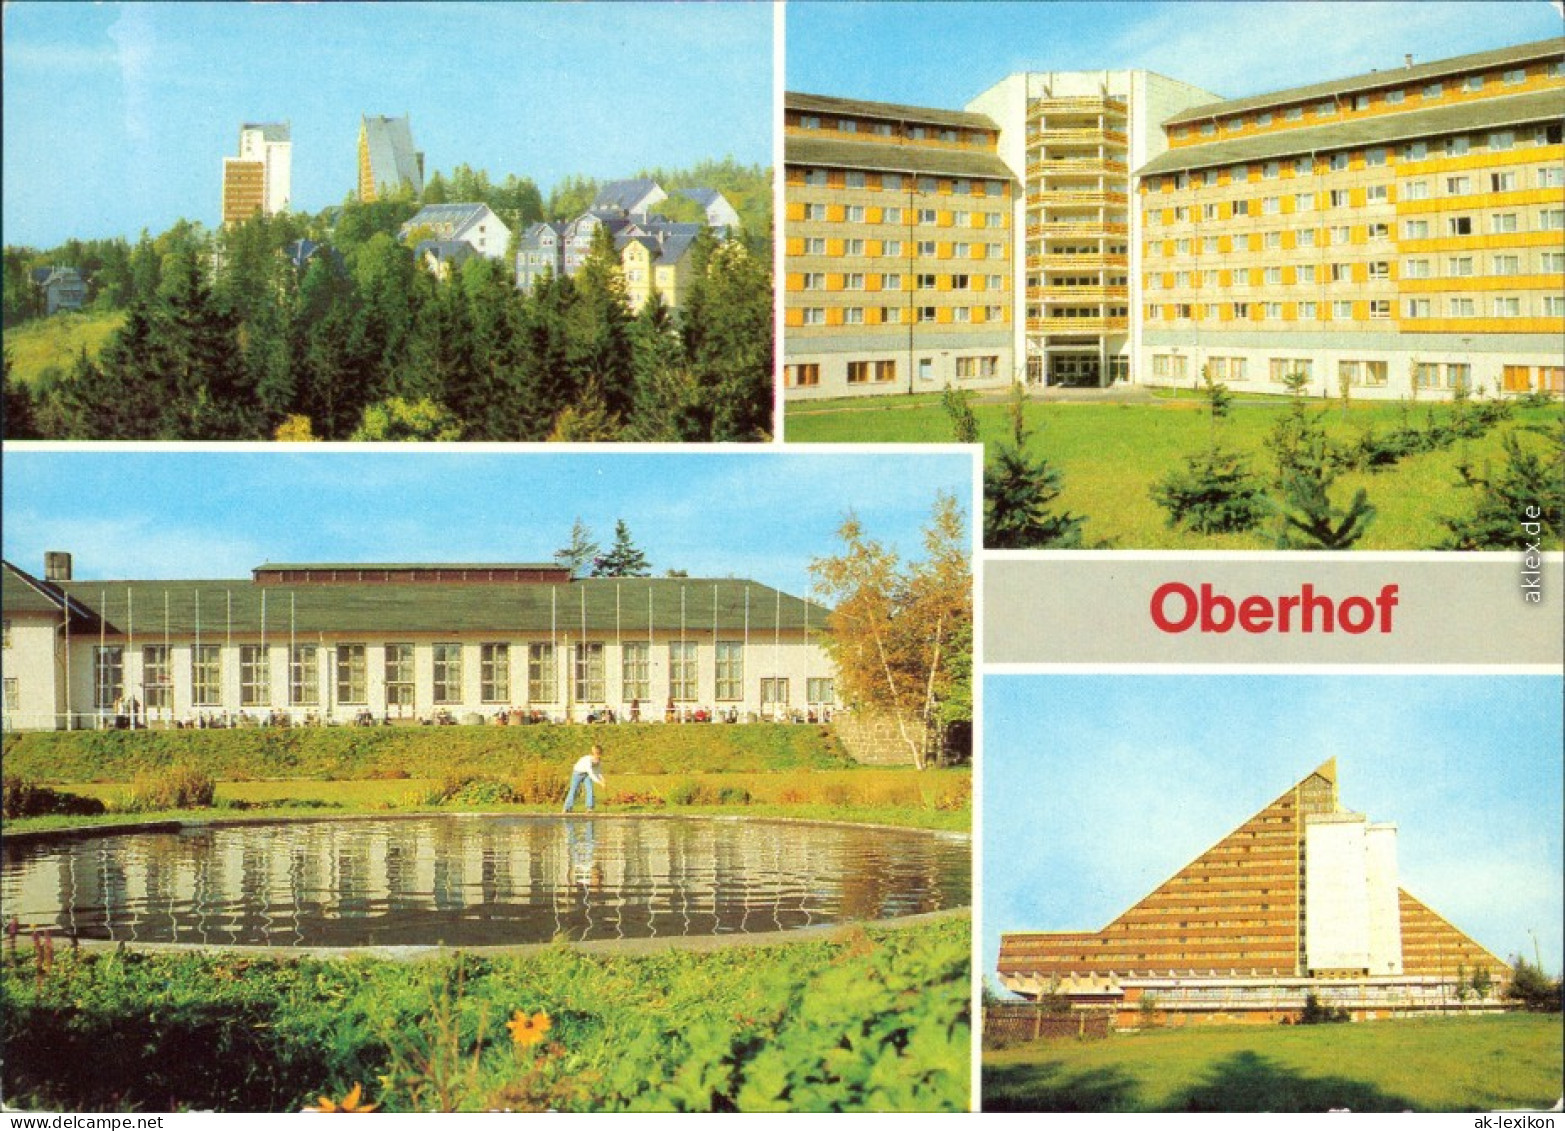 Oberhof (Thüringen) Blick Zum Interhotel "Panorama", FDGB-Erholungsheim   1982 - Oberhof